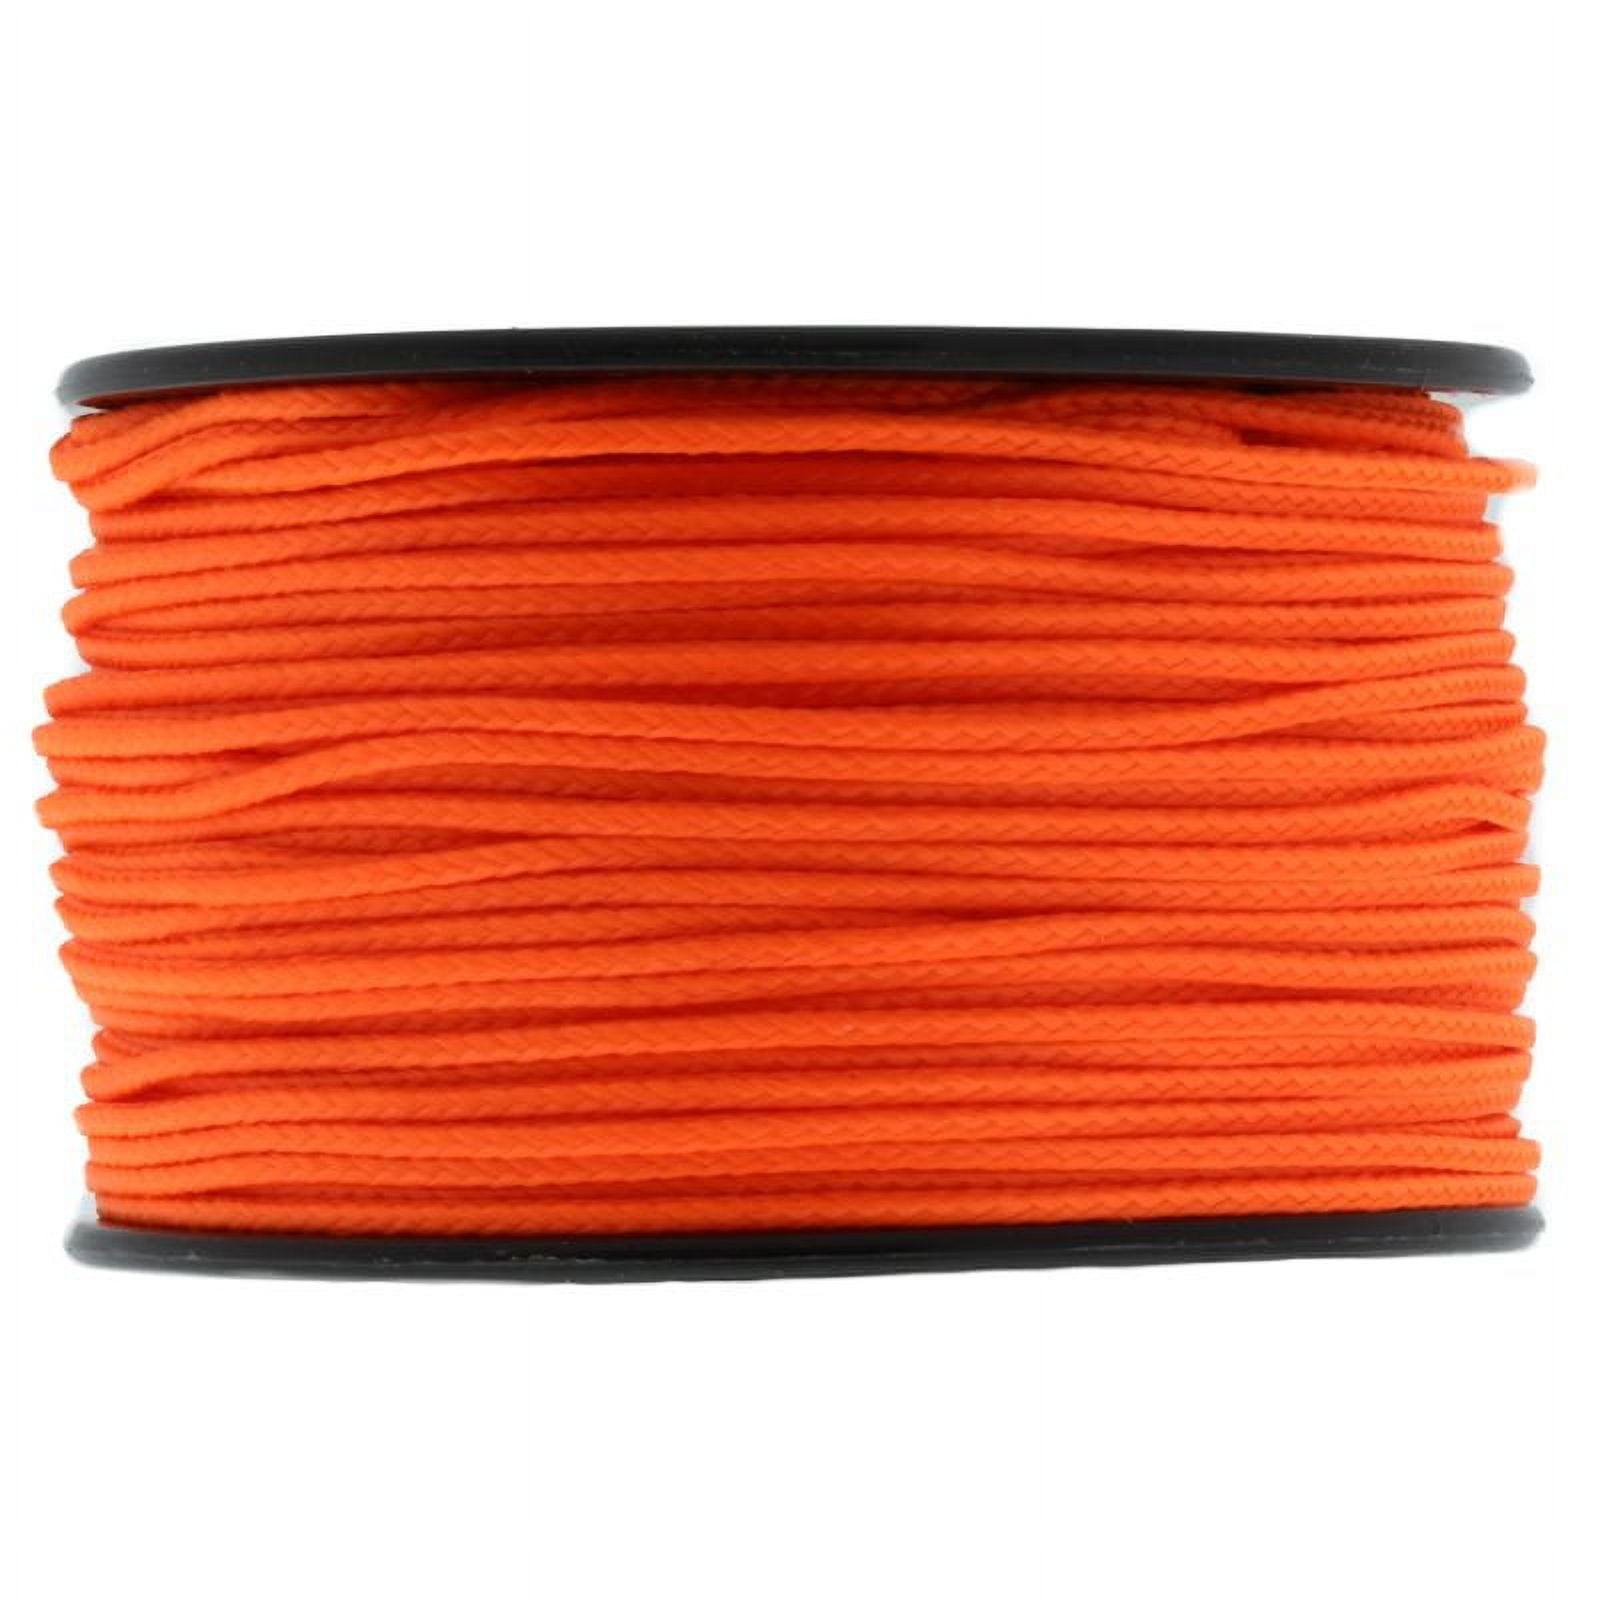 Neon Orange Micro Cord - 100 Pound - 125 Feet - Great Paracord Accessory Cord